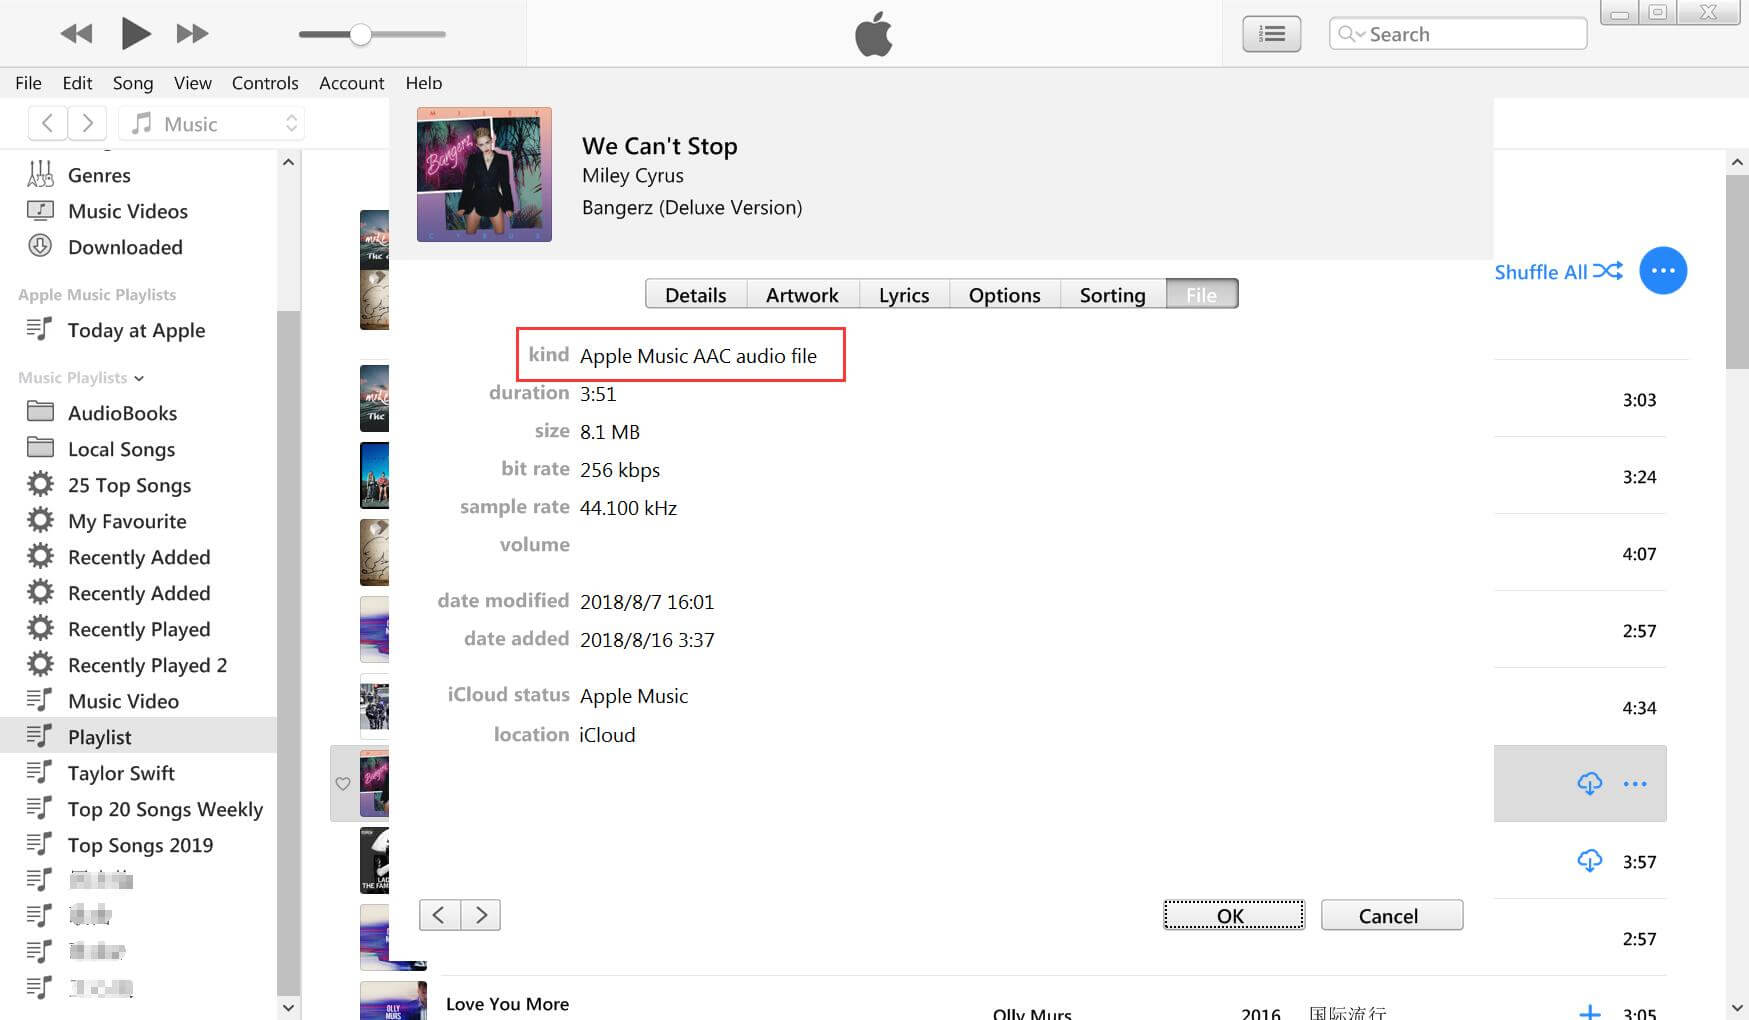 Apple Music AAC audio file